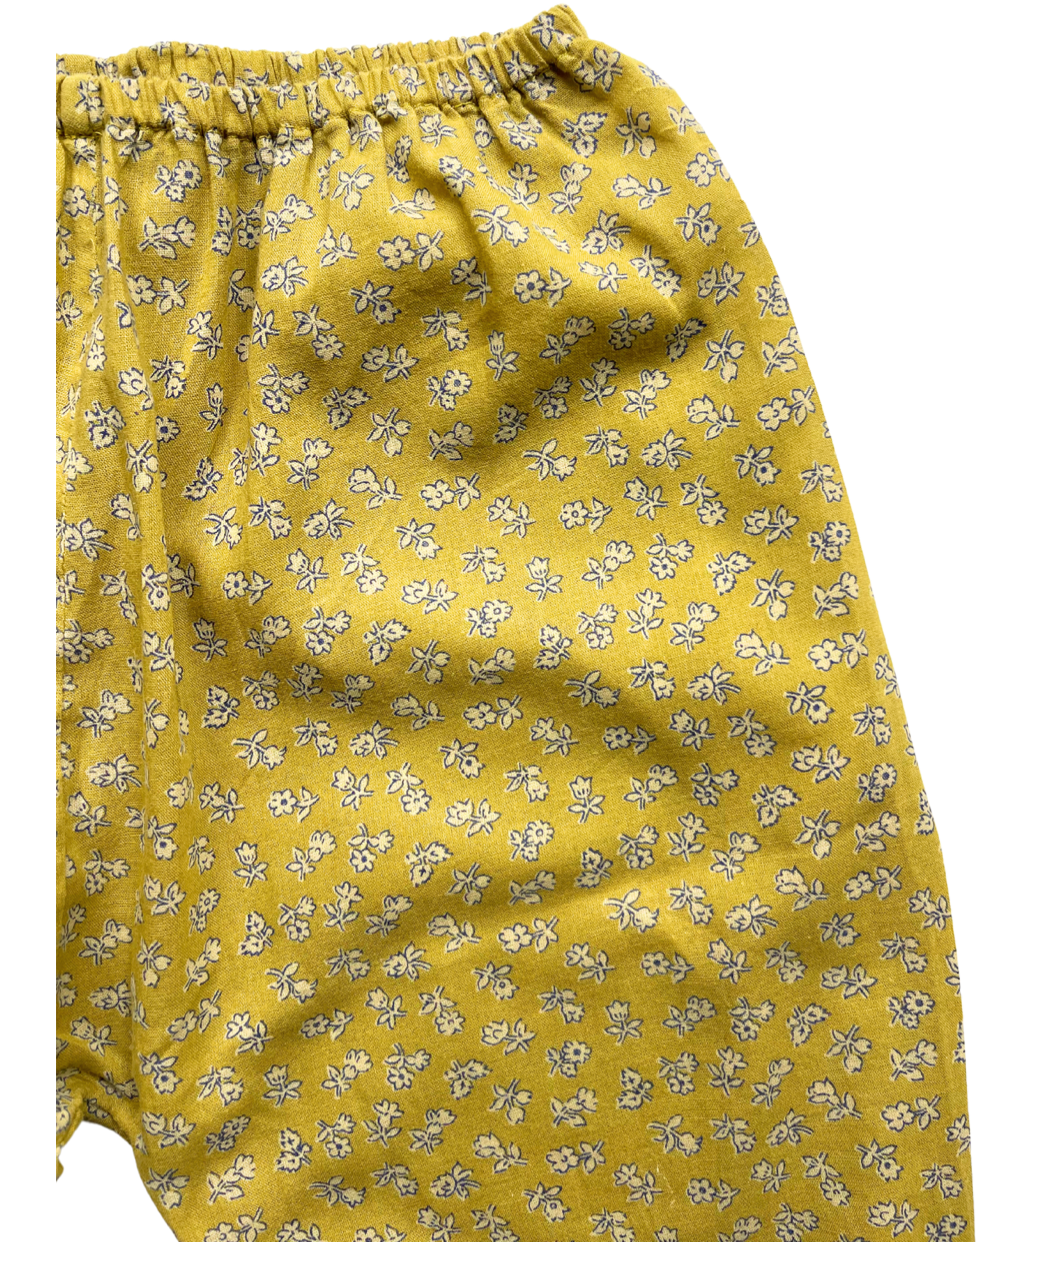 CARAMEL - Sarouel en coton jaune à fleurs - 2 ans